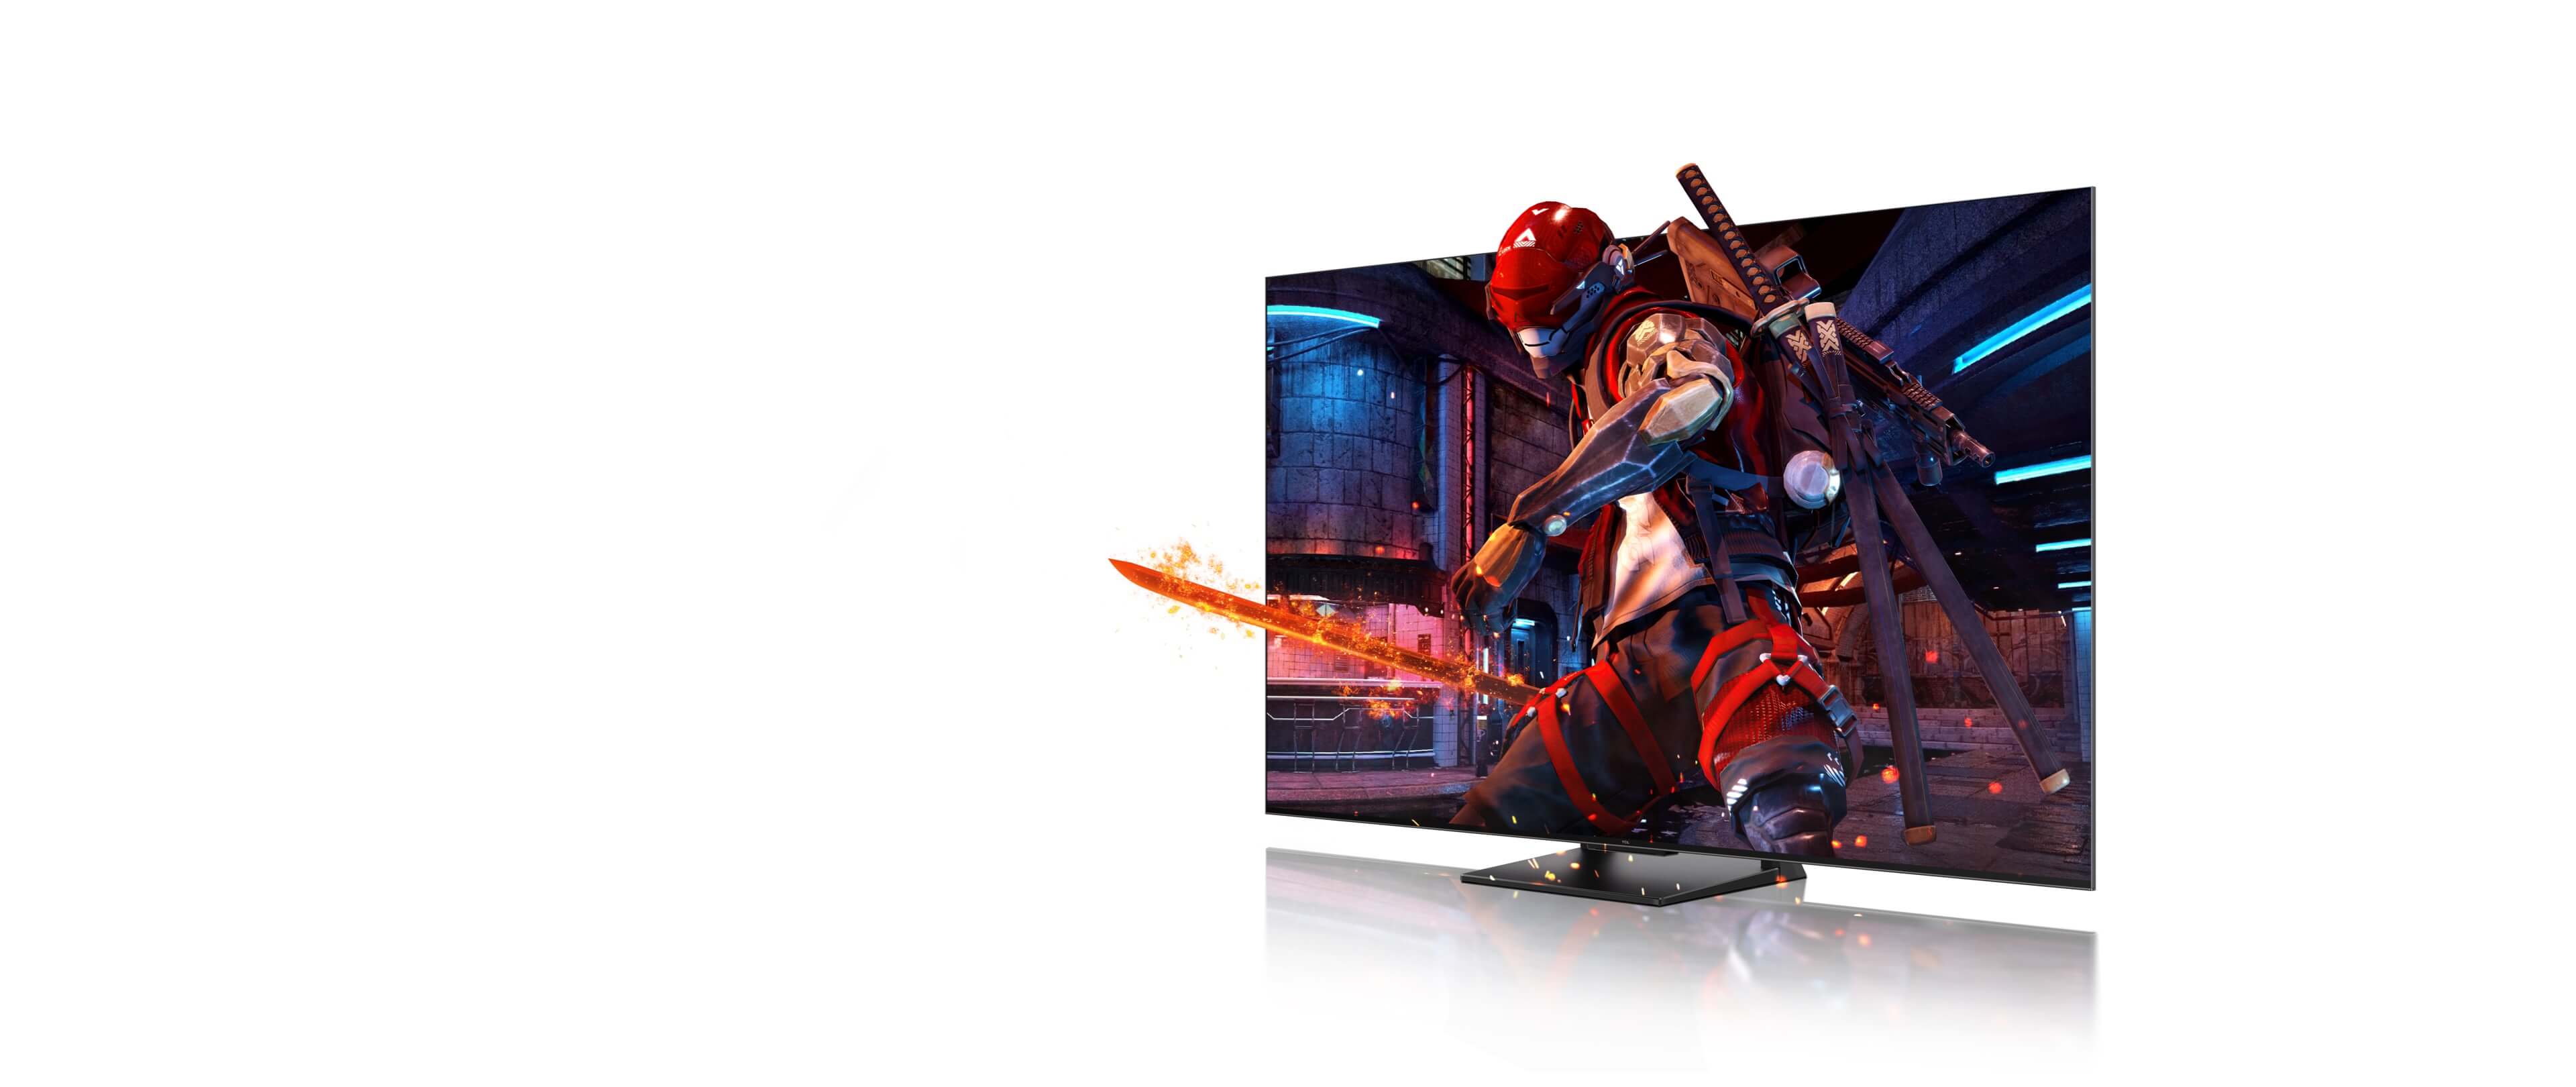 南宫ng·28 4K QLED TV i <br>Game Master Pro 2.0